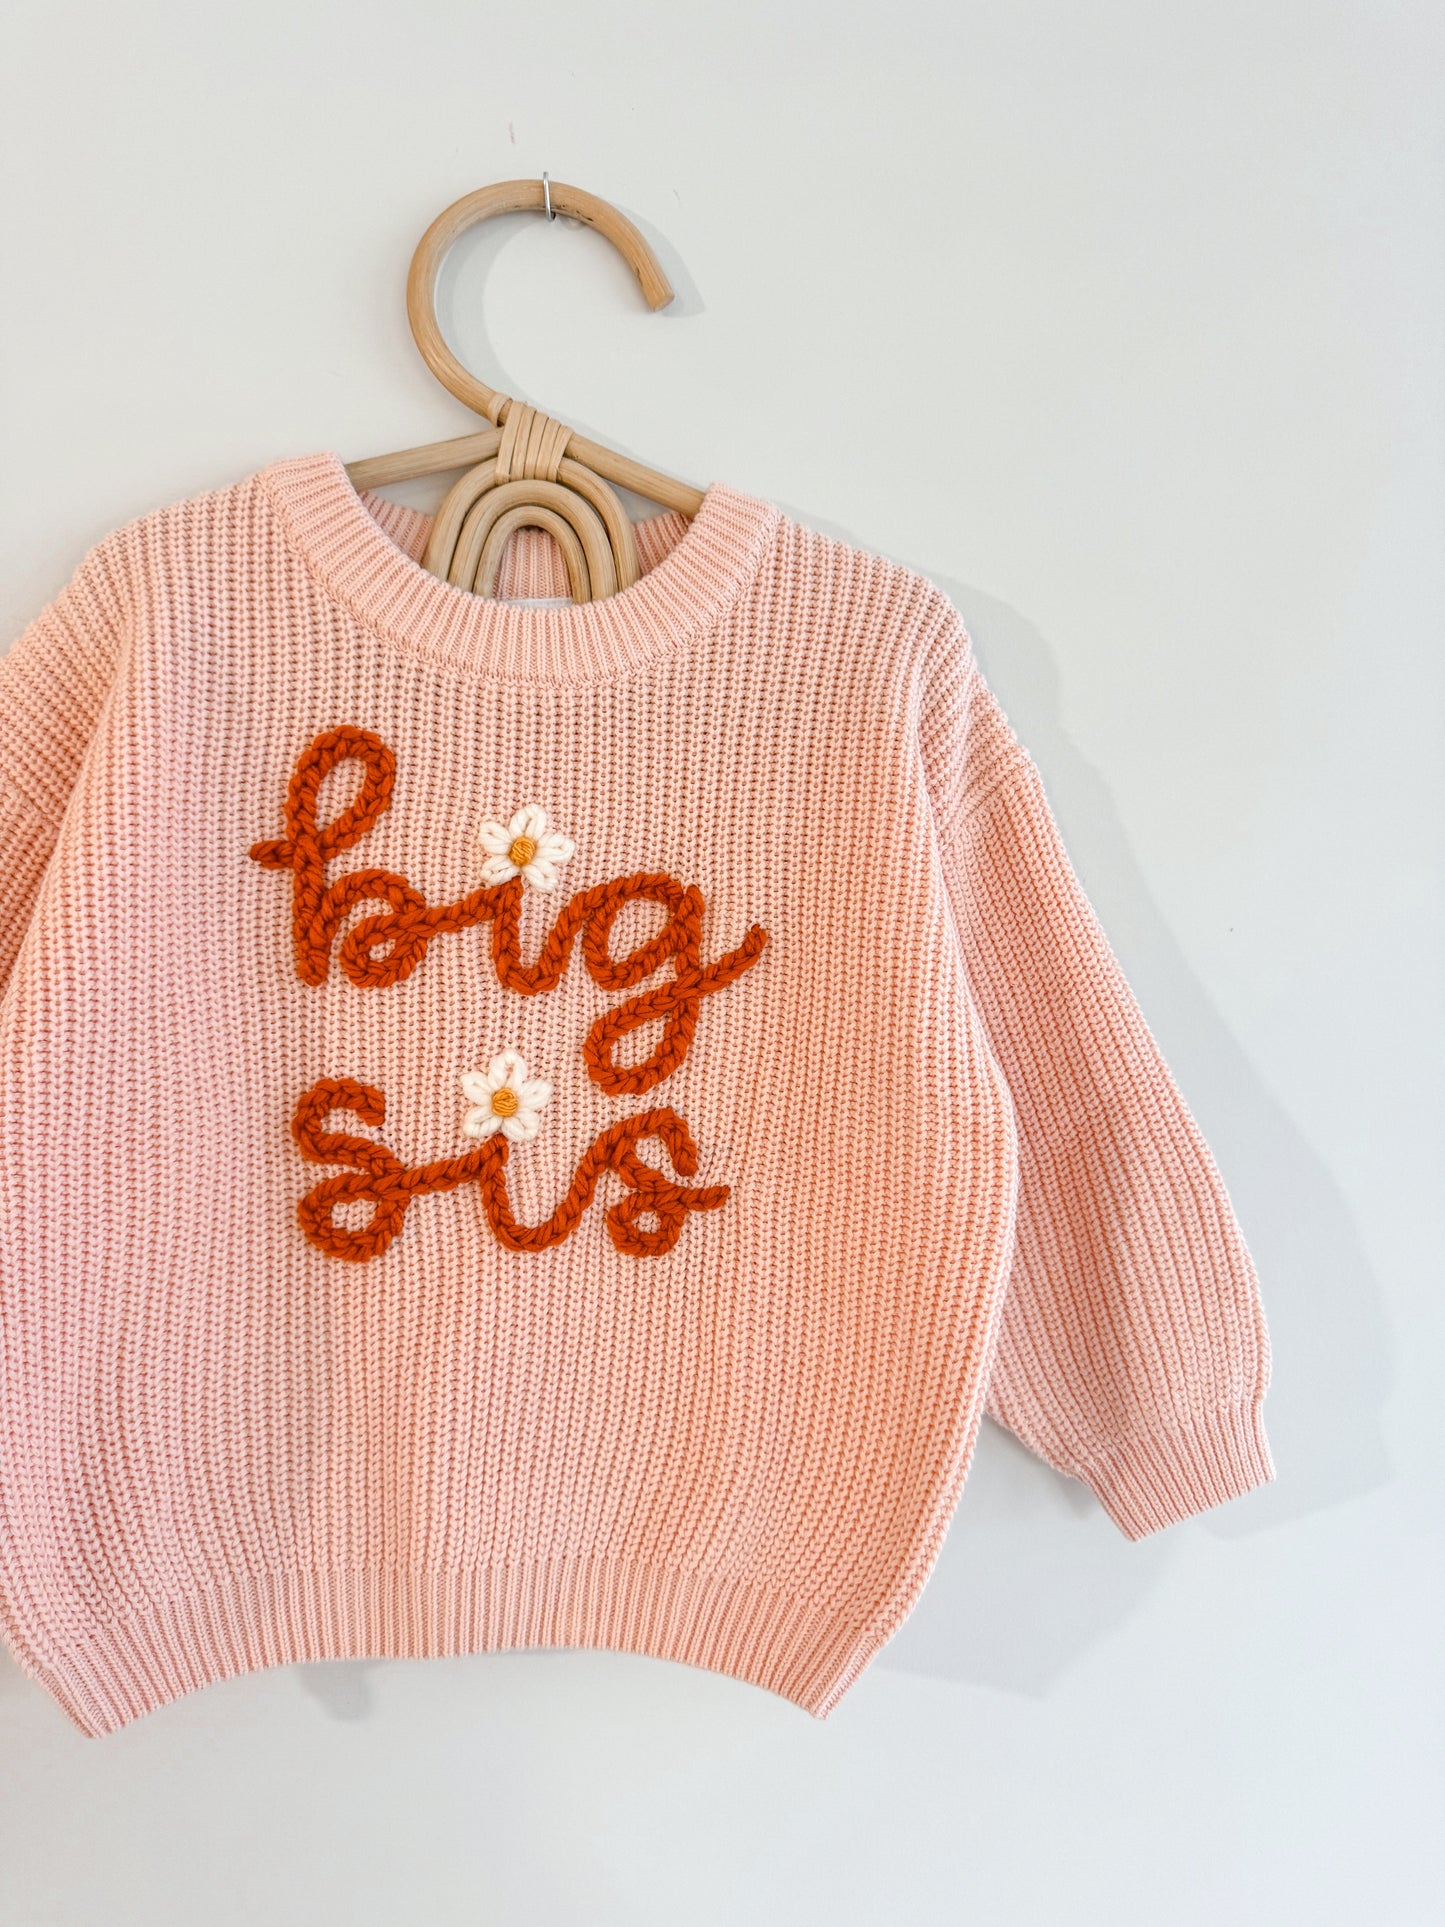 Custom Sweater: Just Peachy